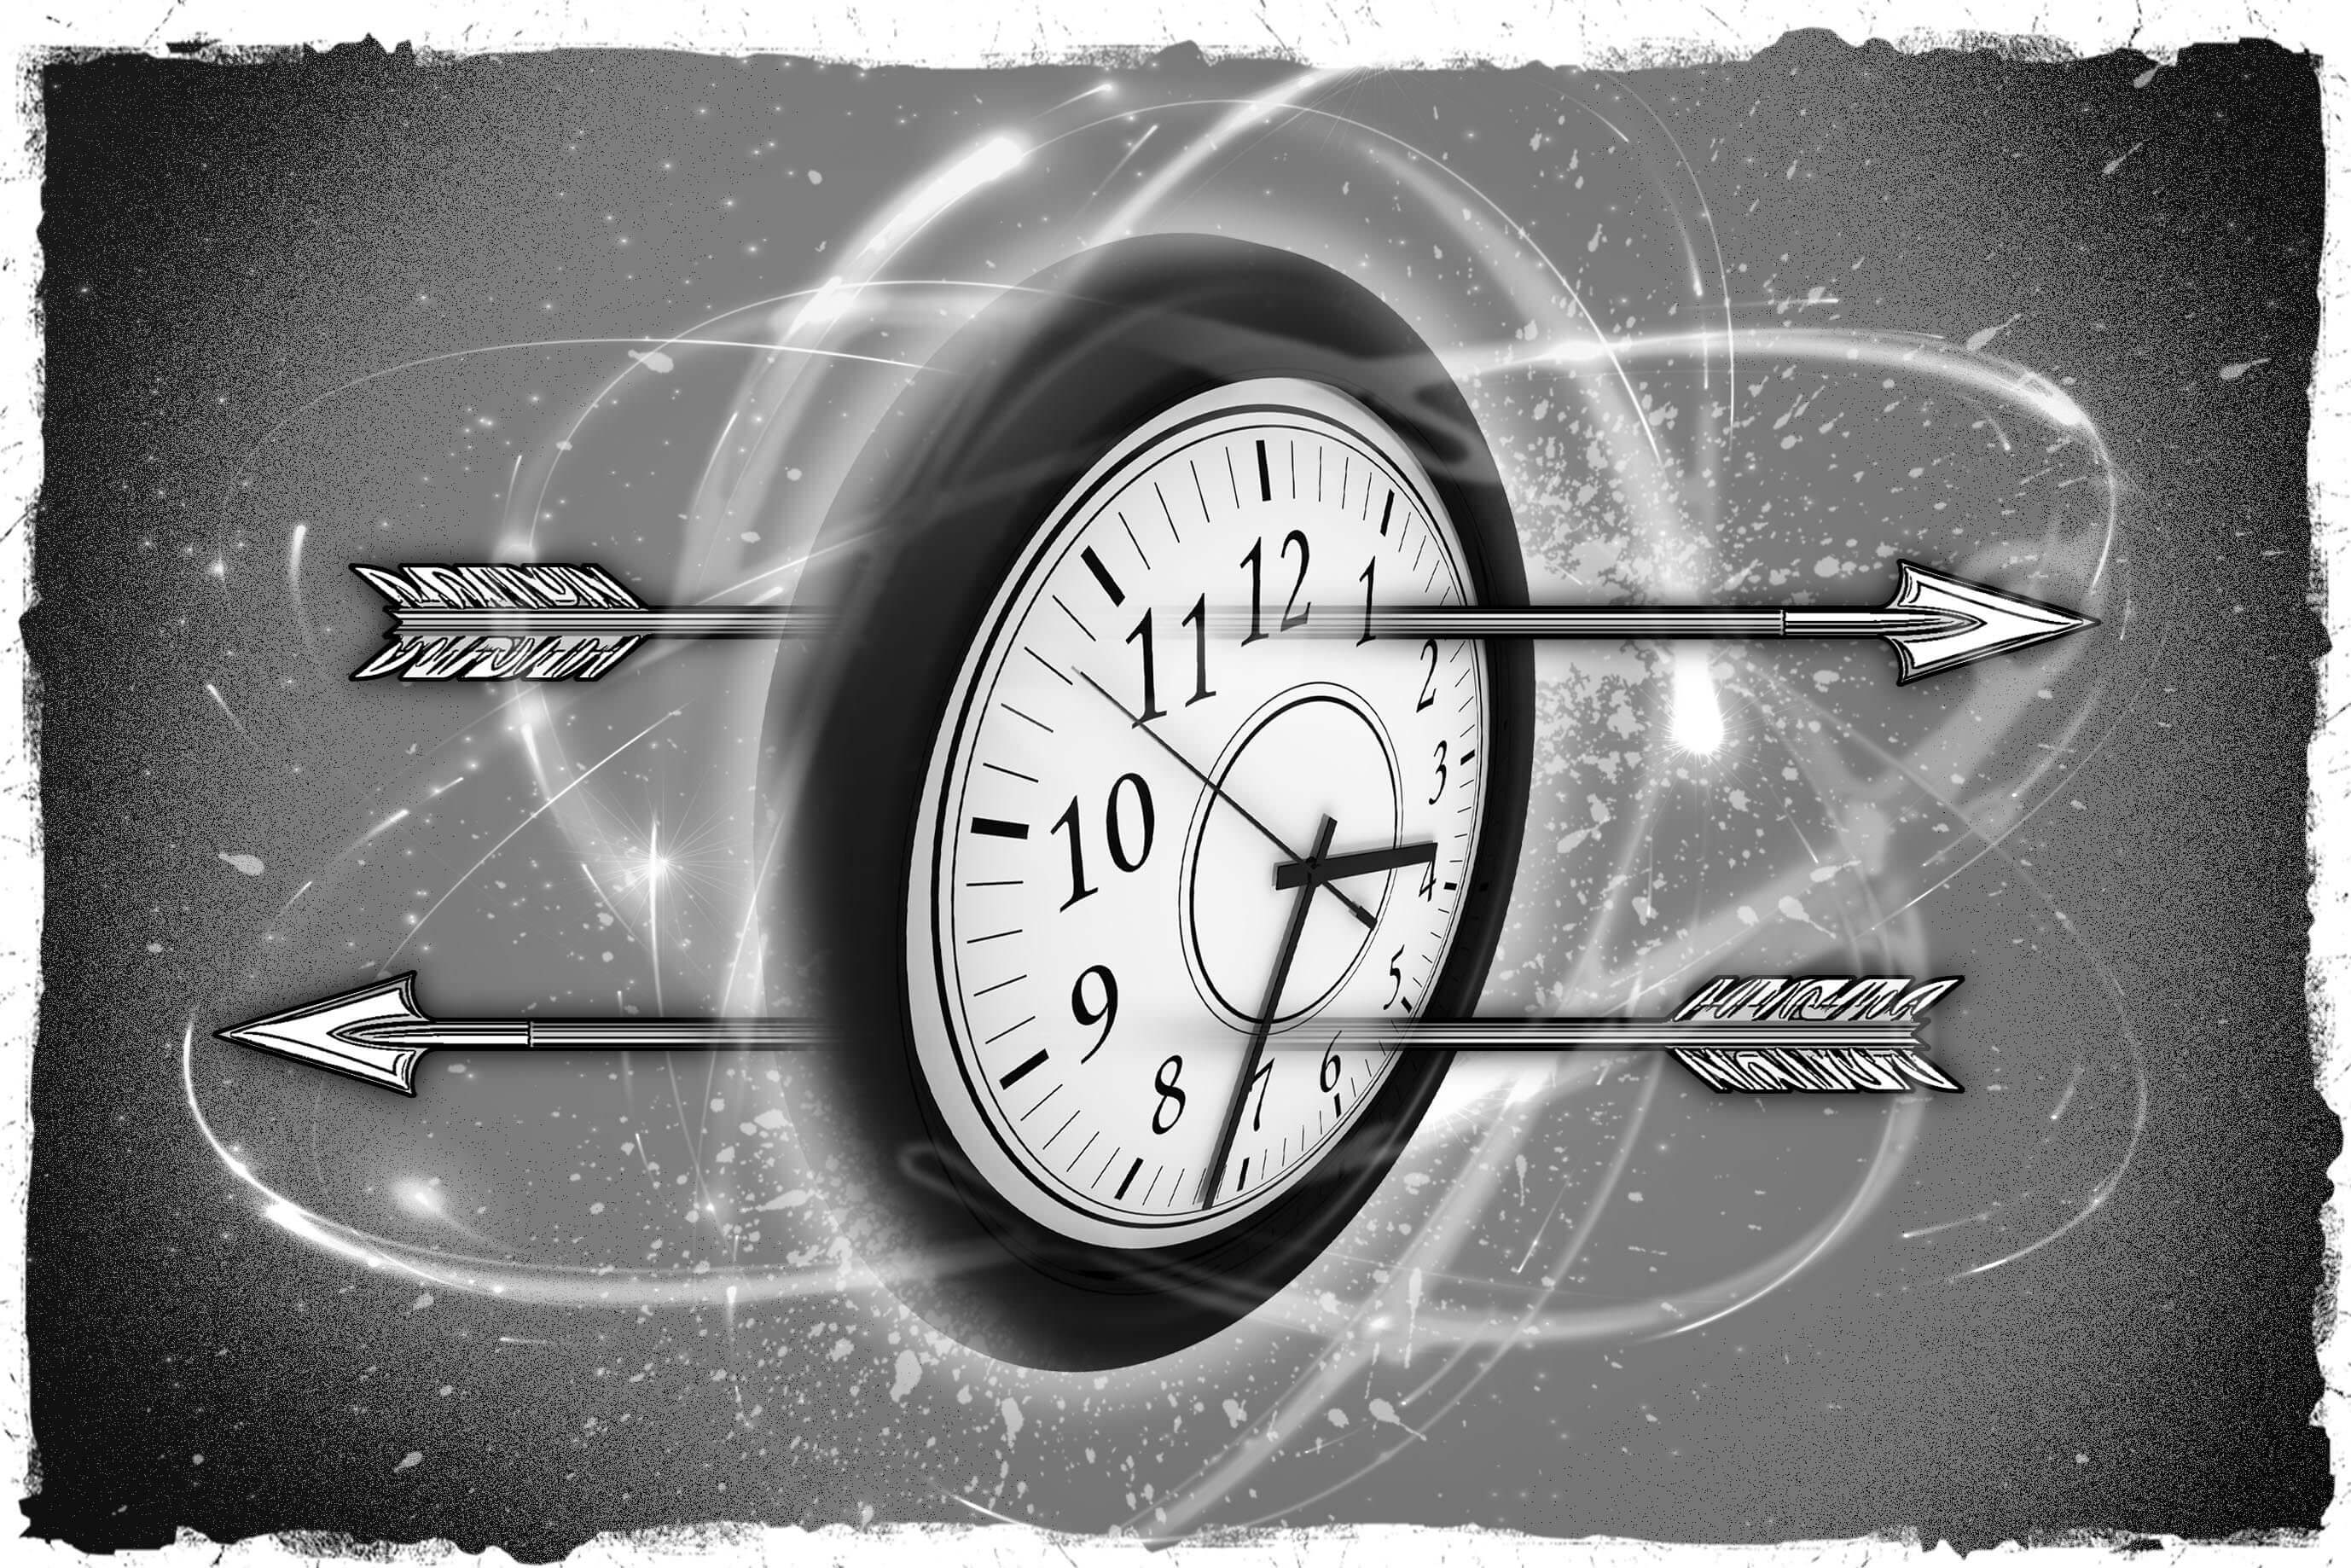 what time is it <p>До начала ХХ столетия считалось, что время - есть величина абсолютная. Но после того, как Альберт Эйнштейн опубликовал общую теорию относительности (ОТО), стало понятно, что время - понятие более субъективное и имеет отношение к наблюдателю, который его измеряет. И все же, многие продолжали трактовать время так, словно это прямая железнодорожная линия, двигаться по которой можно только вперед или назад. Но что, если эта железнодорожная линия ветвится или вовсе имеет окружные пути, двигаясь по которым поезд возвращается на станцию, которую уже проезжал? Иными словами, можно ли путешествовать в будущее или прошлое? Начиная со знаменитого романа Герберта Уэллса Машина времени, научные фантасты придаются фантазиям во всю. Но в реальной жизни представить нечто подобное невозможно. Ведь если бы кто-то в будущем изобрел машину времени, неужто он бы не предупредил нас об угрозе пандемии COVID 19 или об ужасных последствиях глобального потепления? Но к нам так никто и не прибыл. Быть может, стоит посмотреть на время под другим углом?